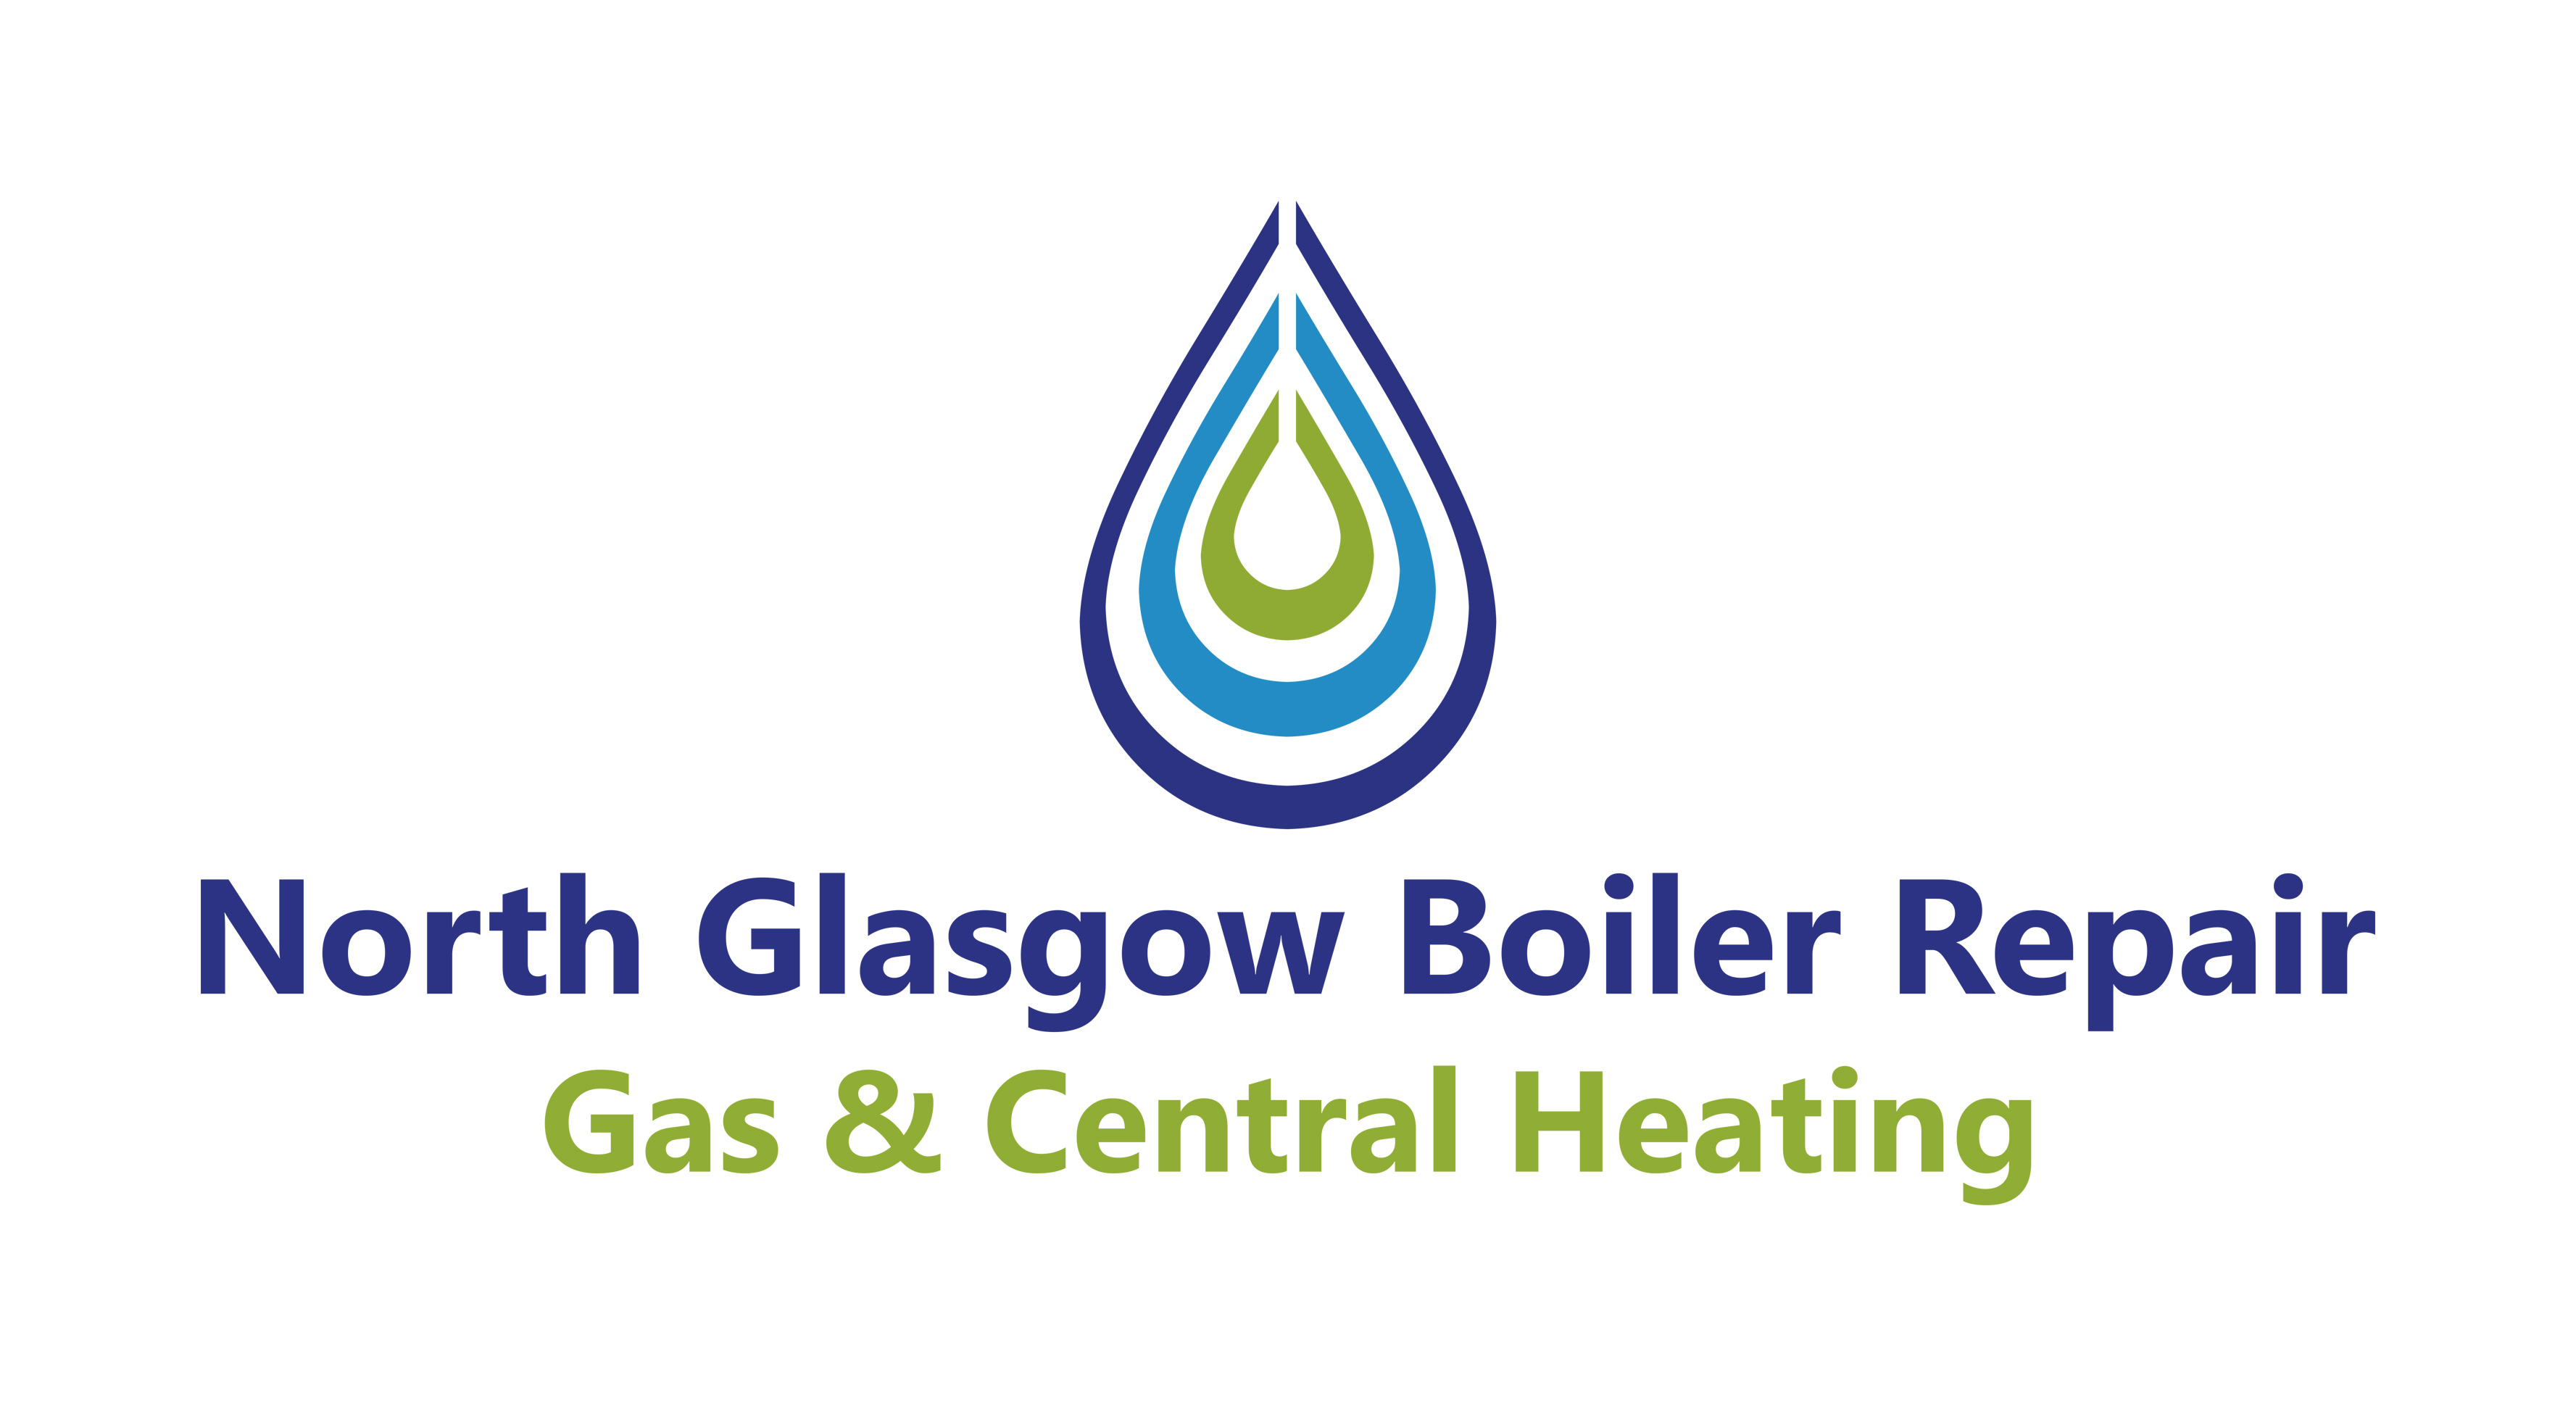 North Glasgow Boiler Repair